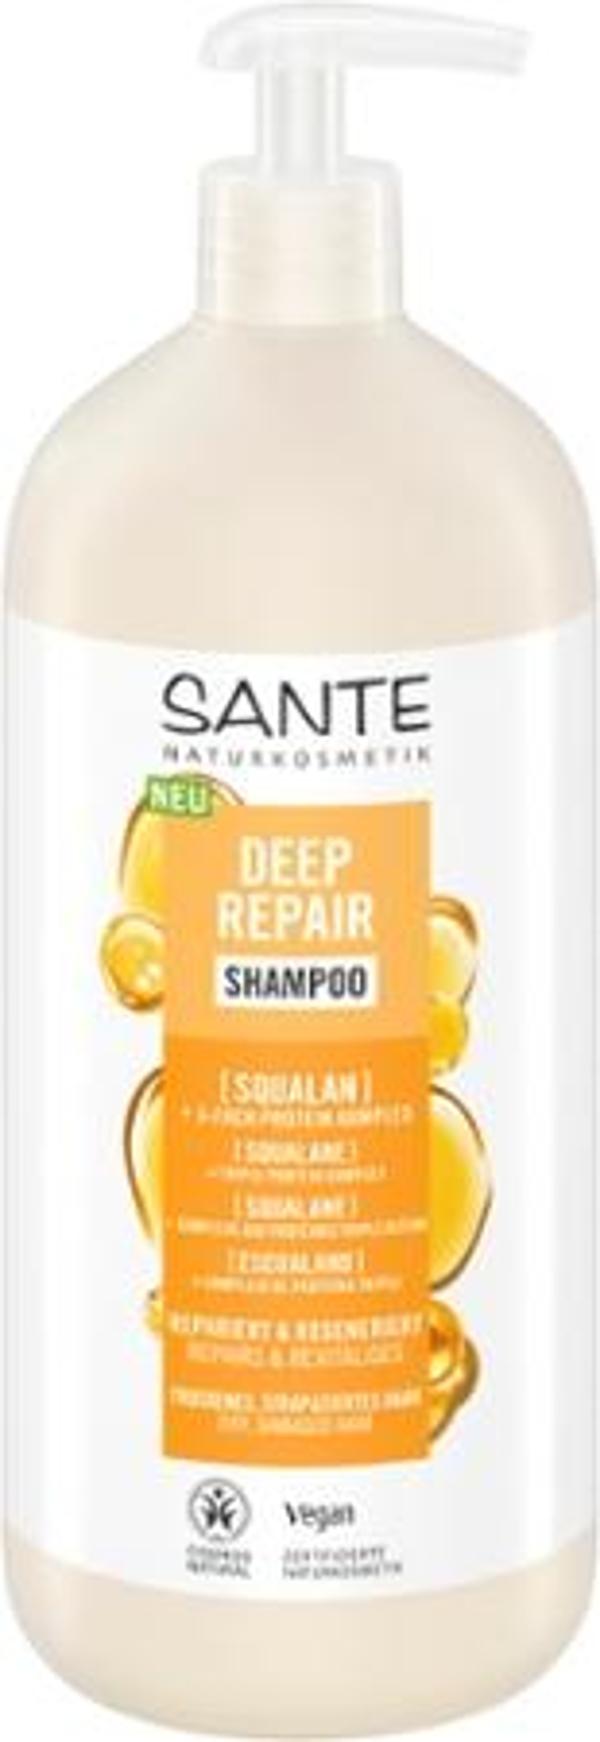 Produktfoto zu Deep Repair Shampoo Squalan 950ml